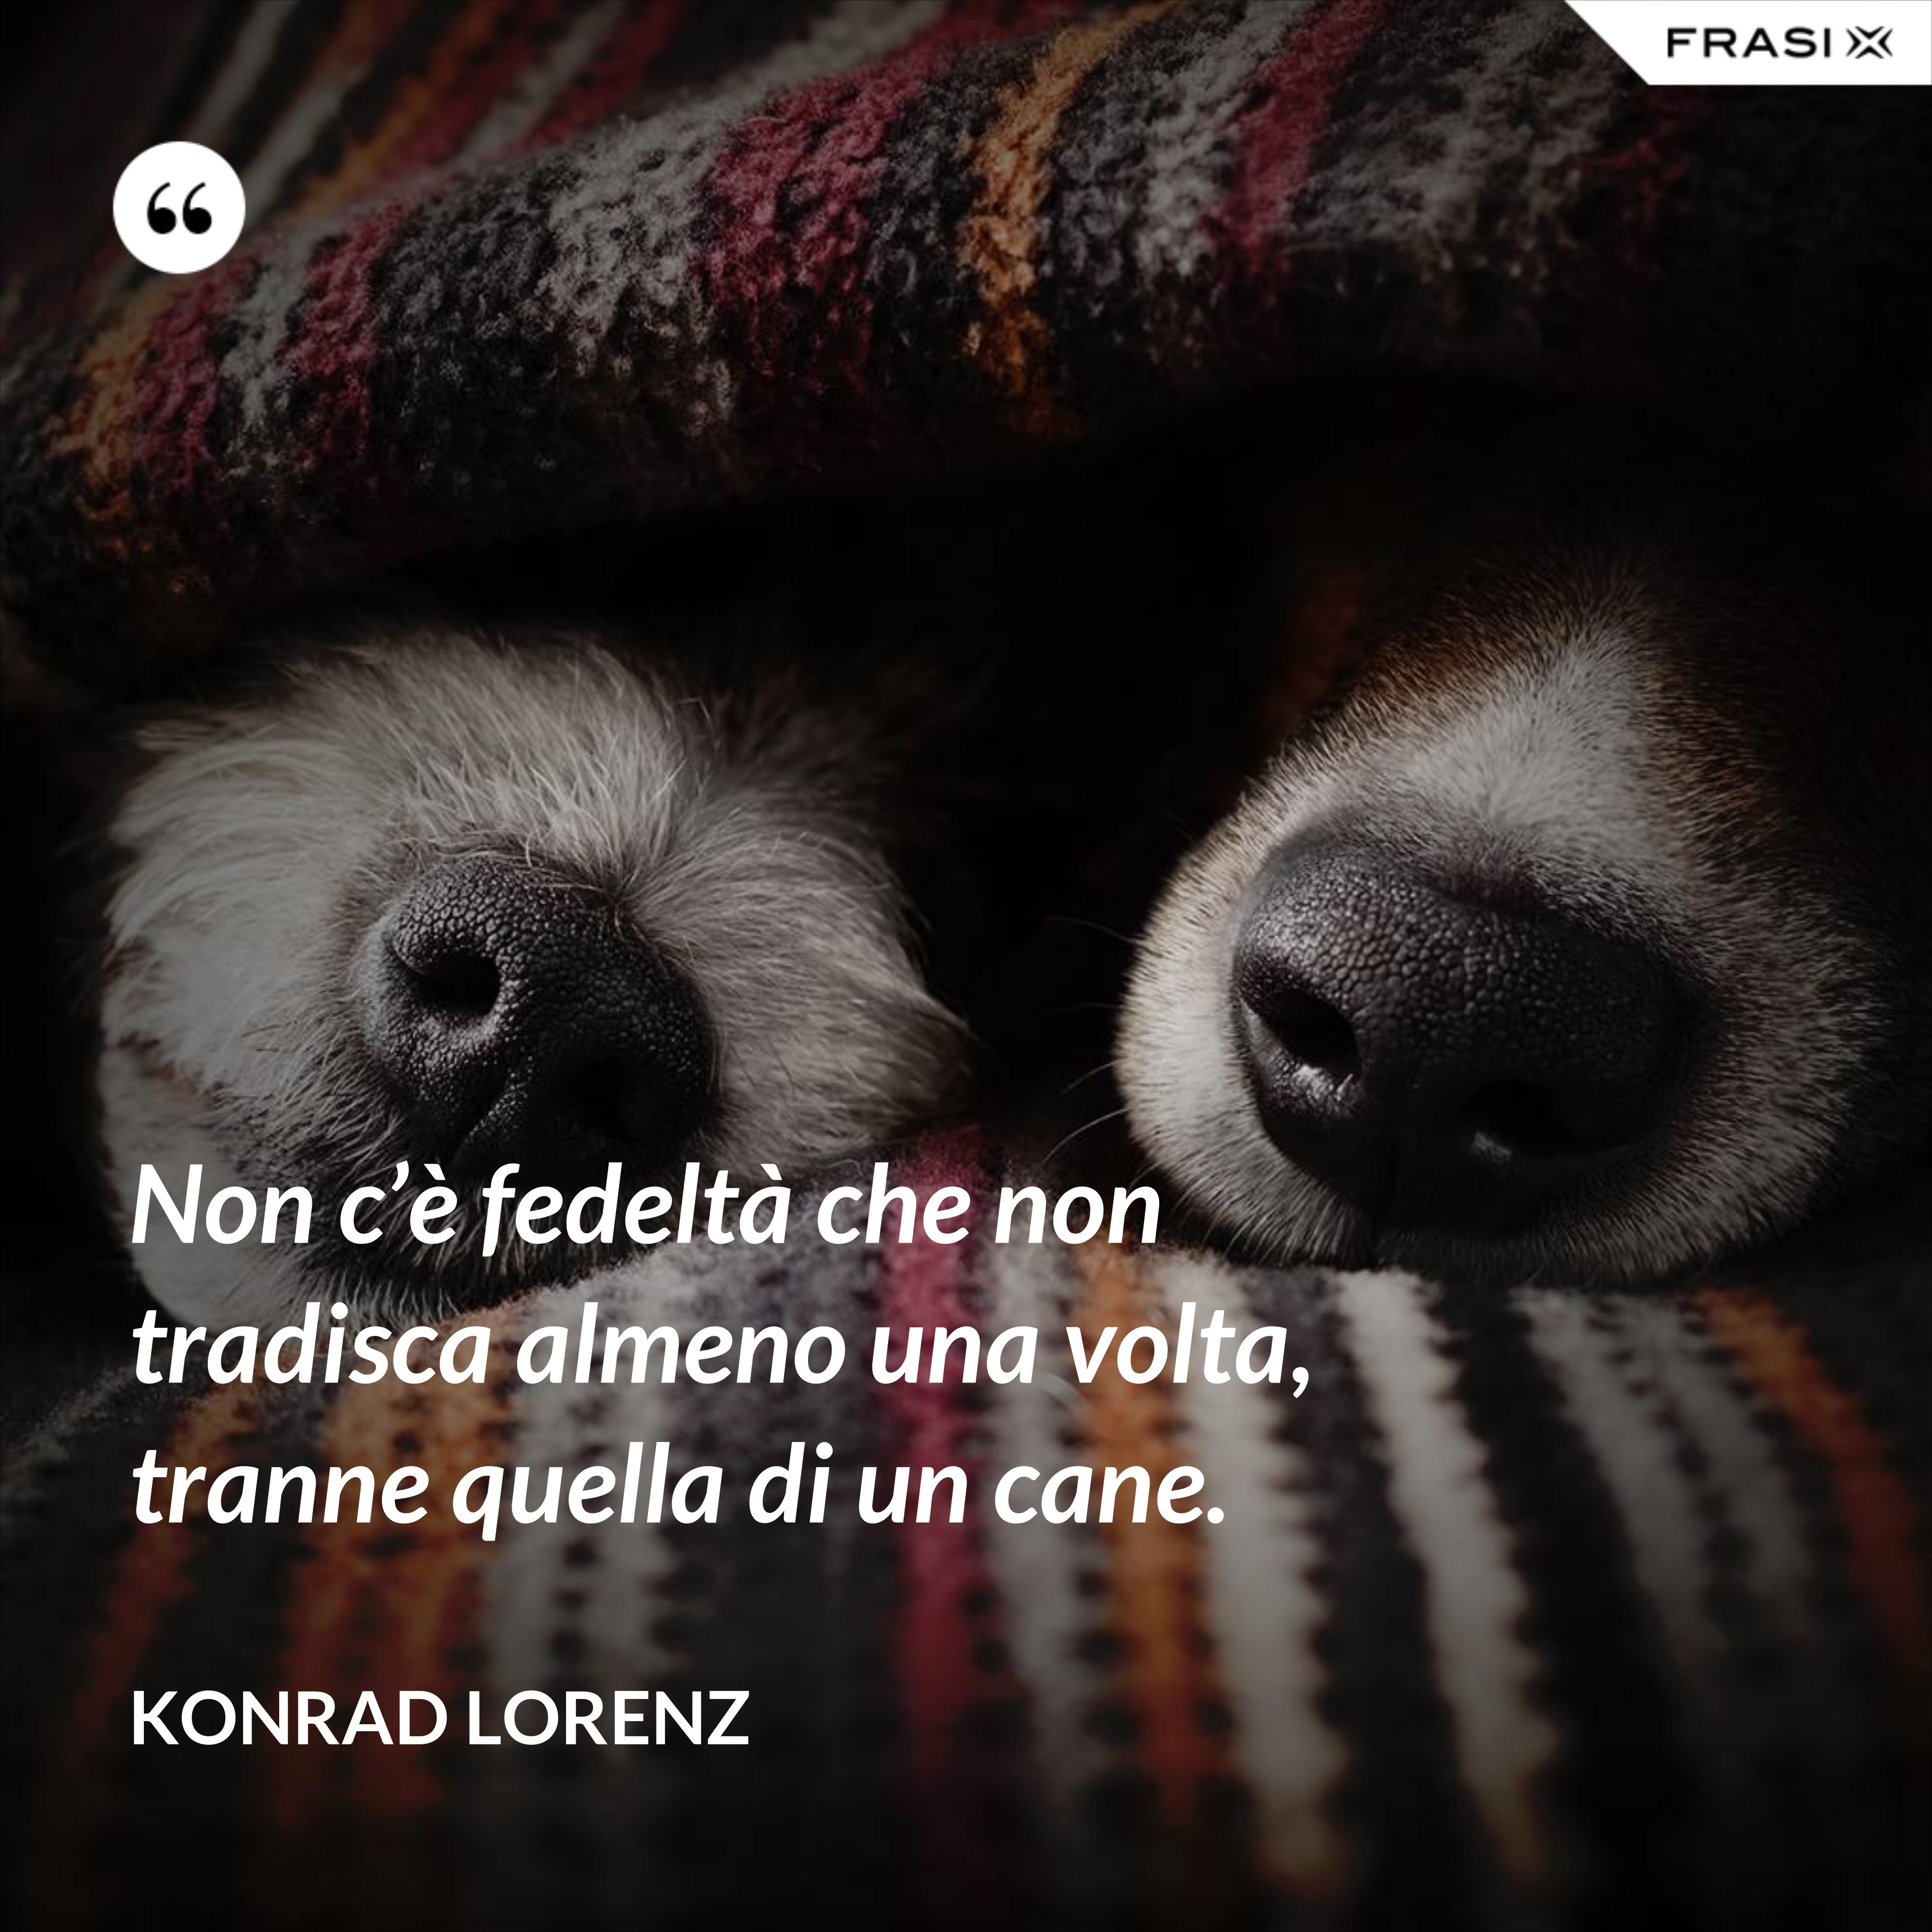 Non c’è fedeltà che non tradisca almeno una volta, tranne quella di un cane. - Konrad Lorenz